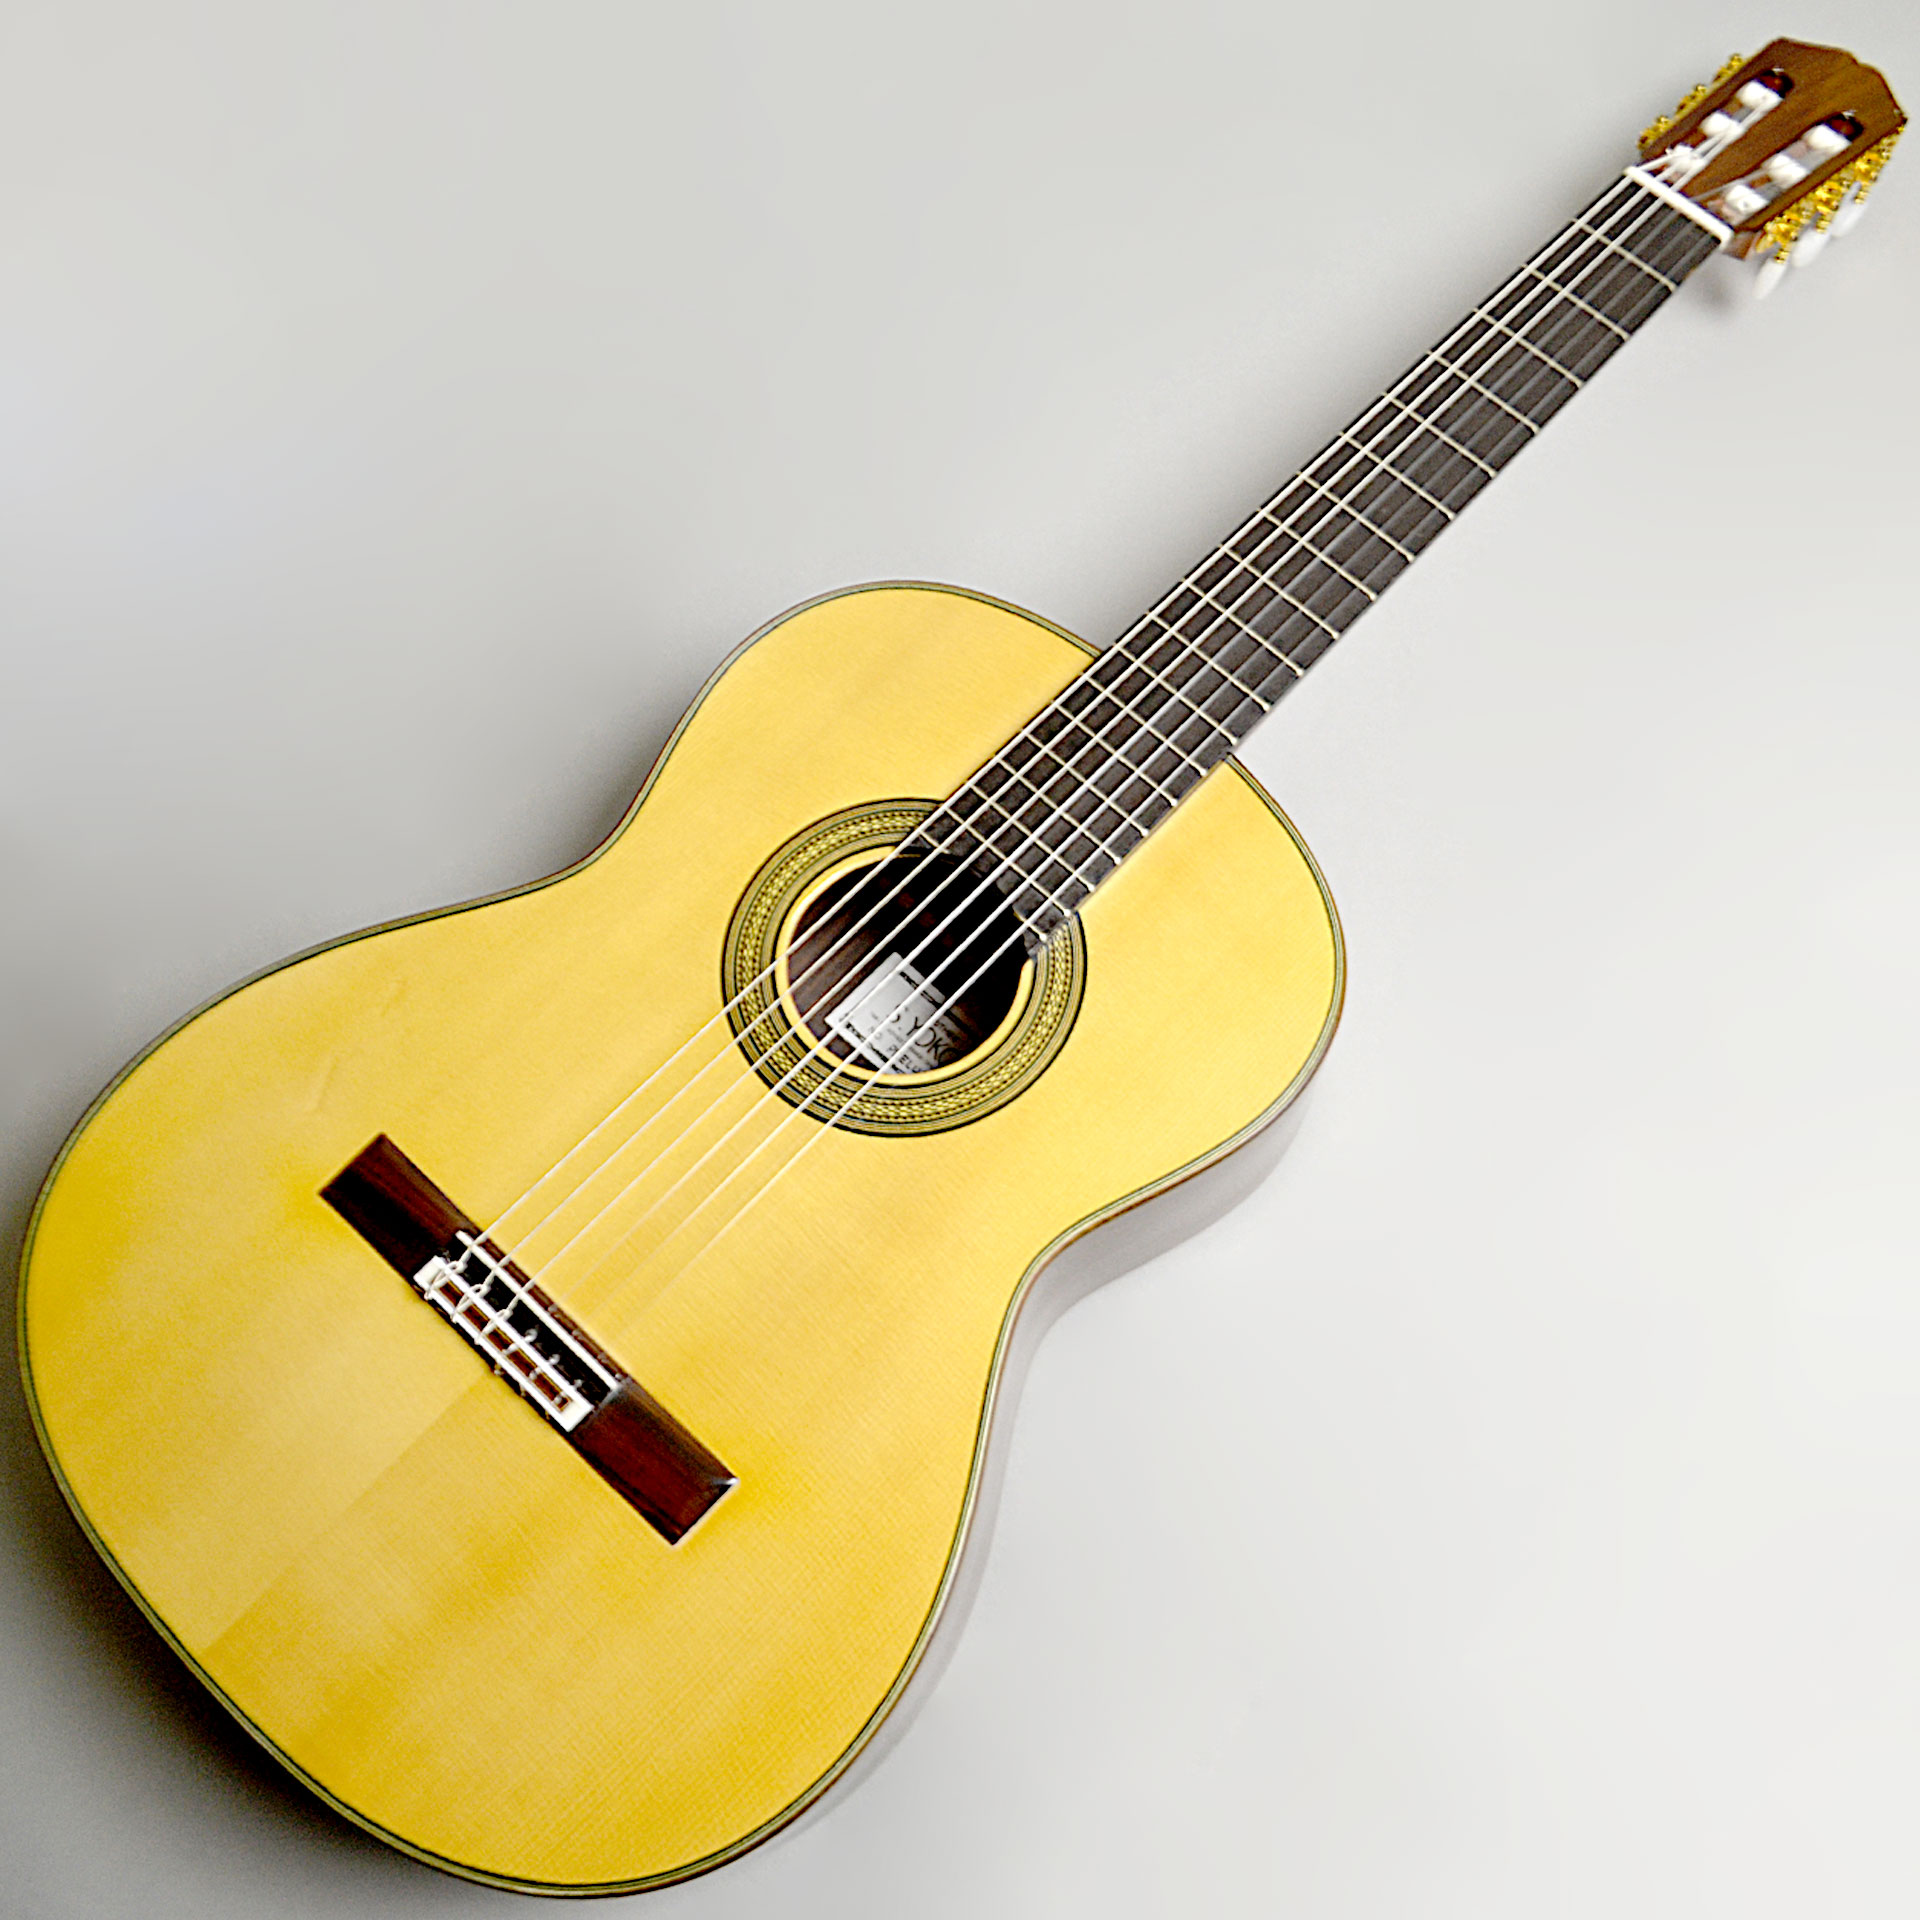 S.YOKOO POEM (横尾 俊佑氏 クラシックギター) - 楽器、器材